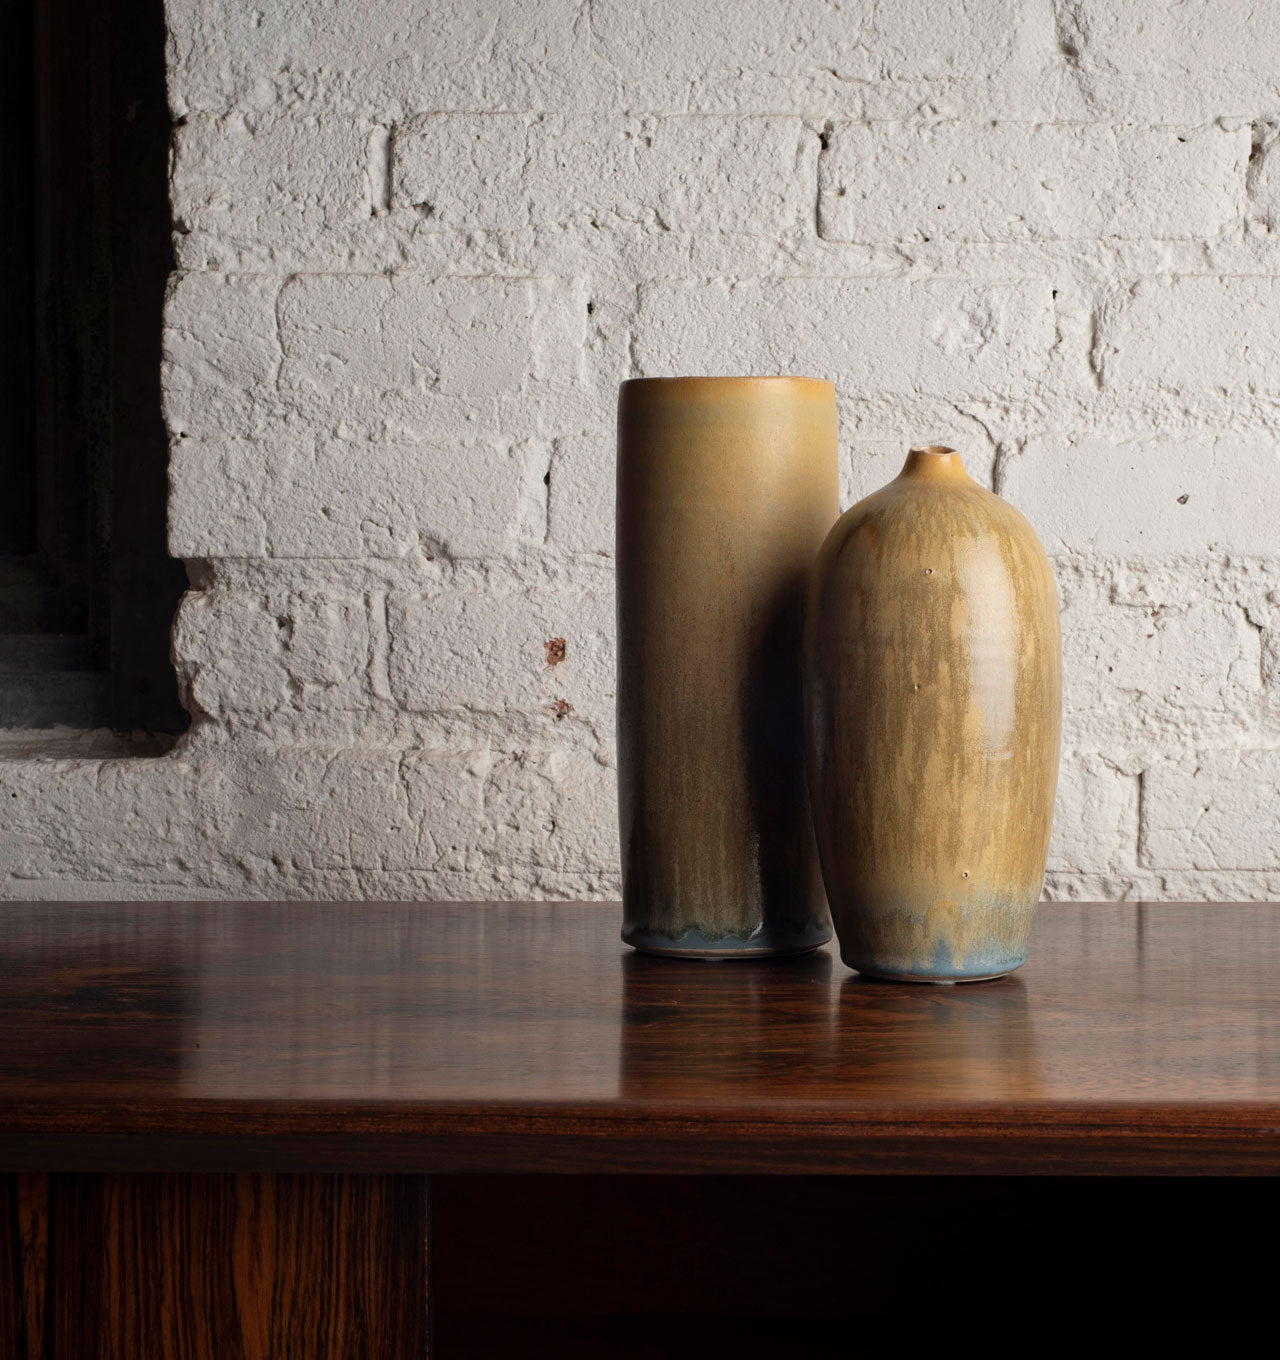 Medium Cylinder Vase and Organic Neck Vase